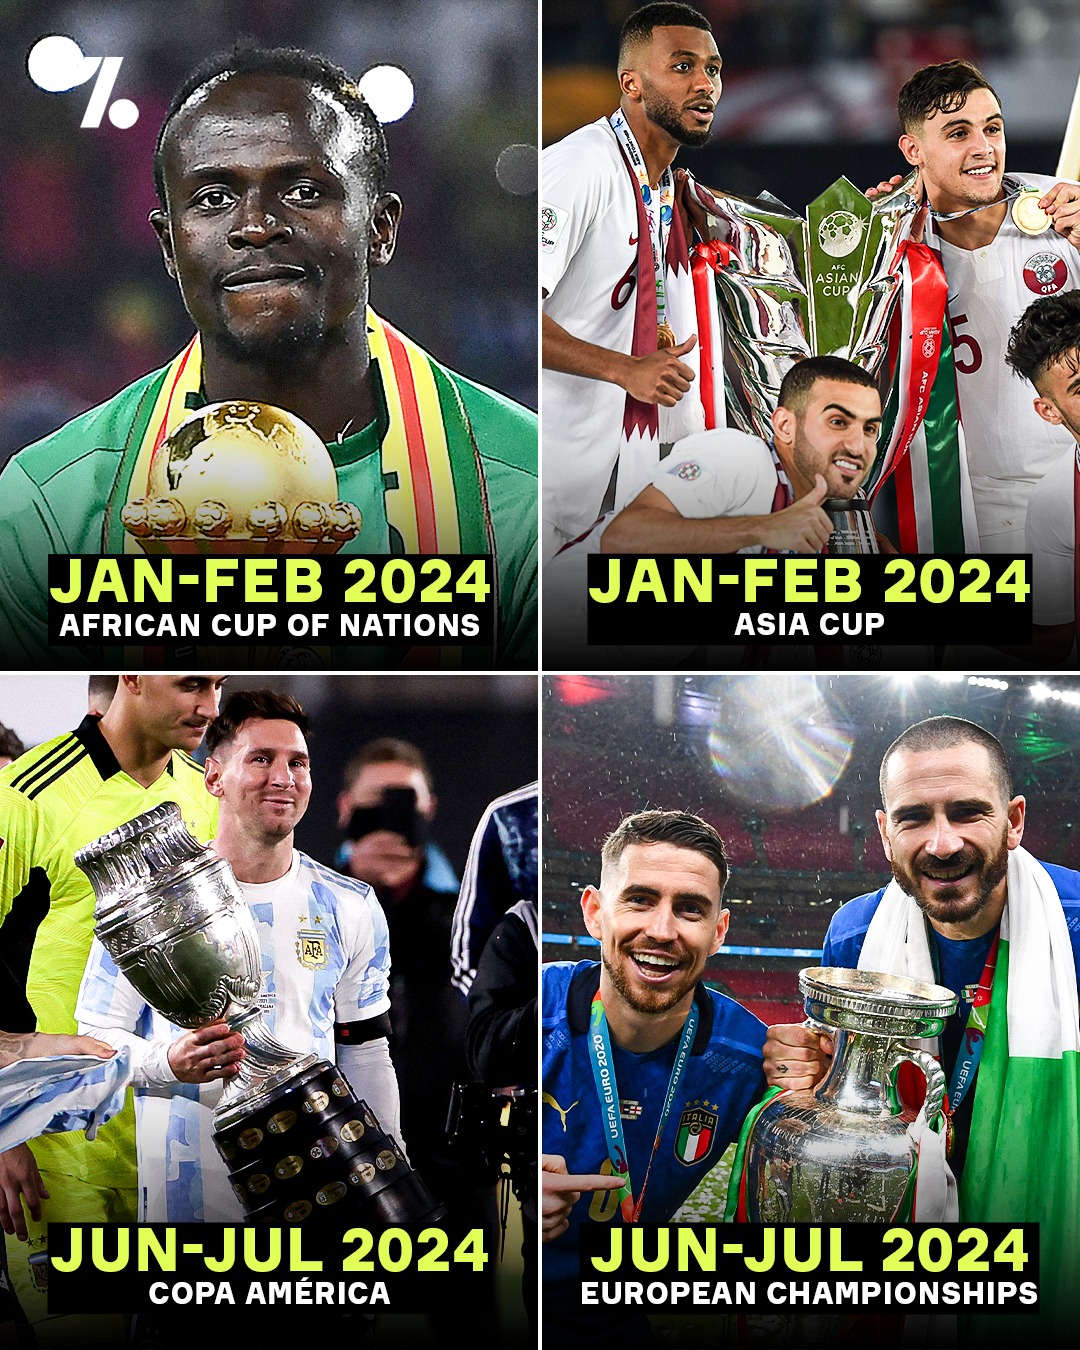 足球盛宴世界4大洲际杯赛都将在明年同一年举办，04年以来首次